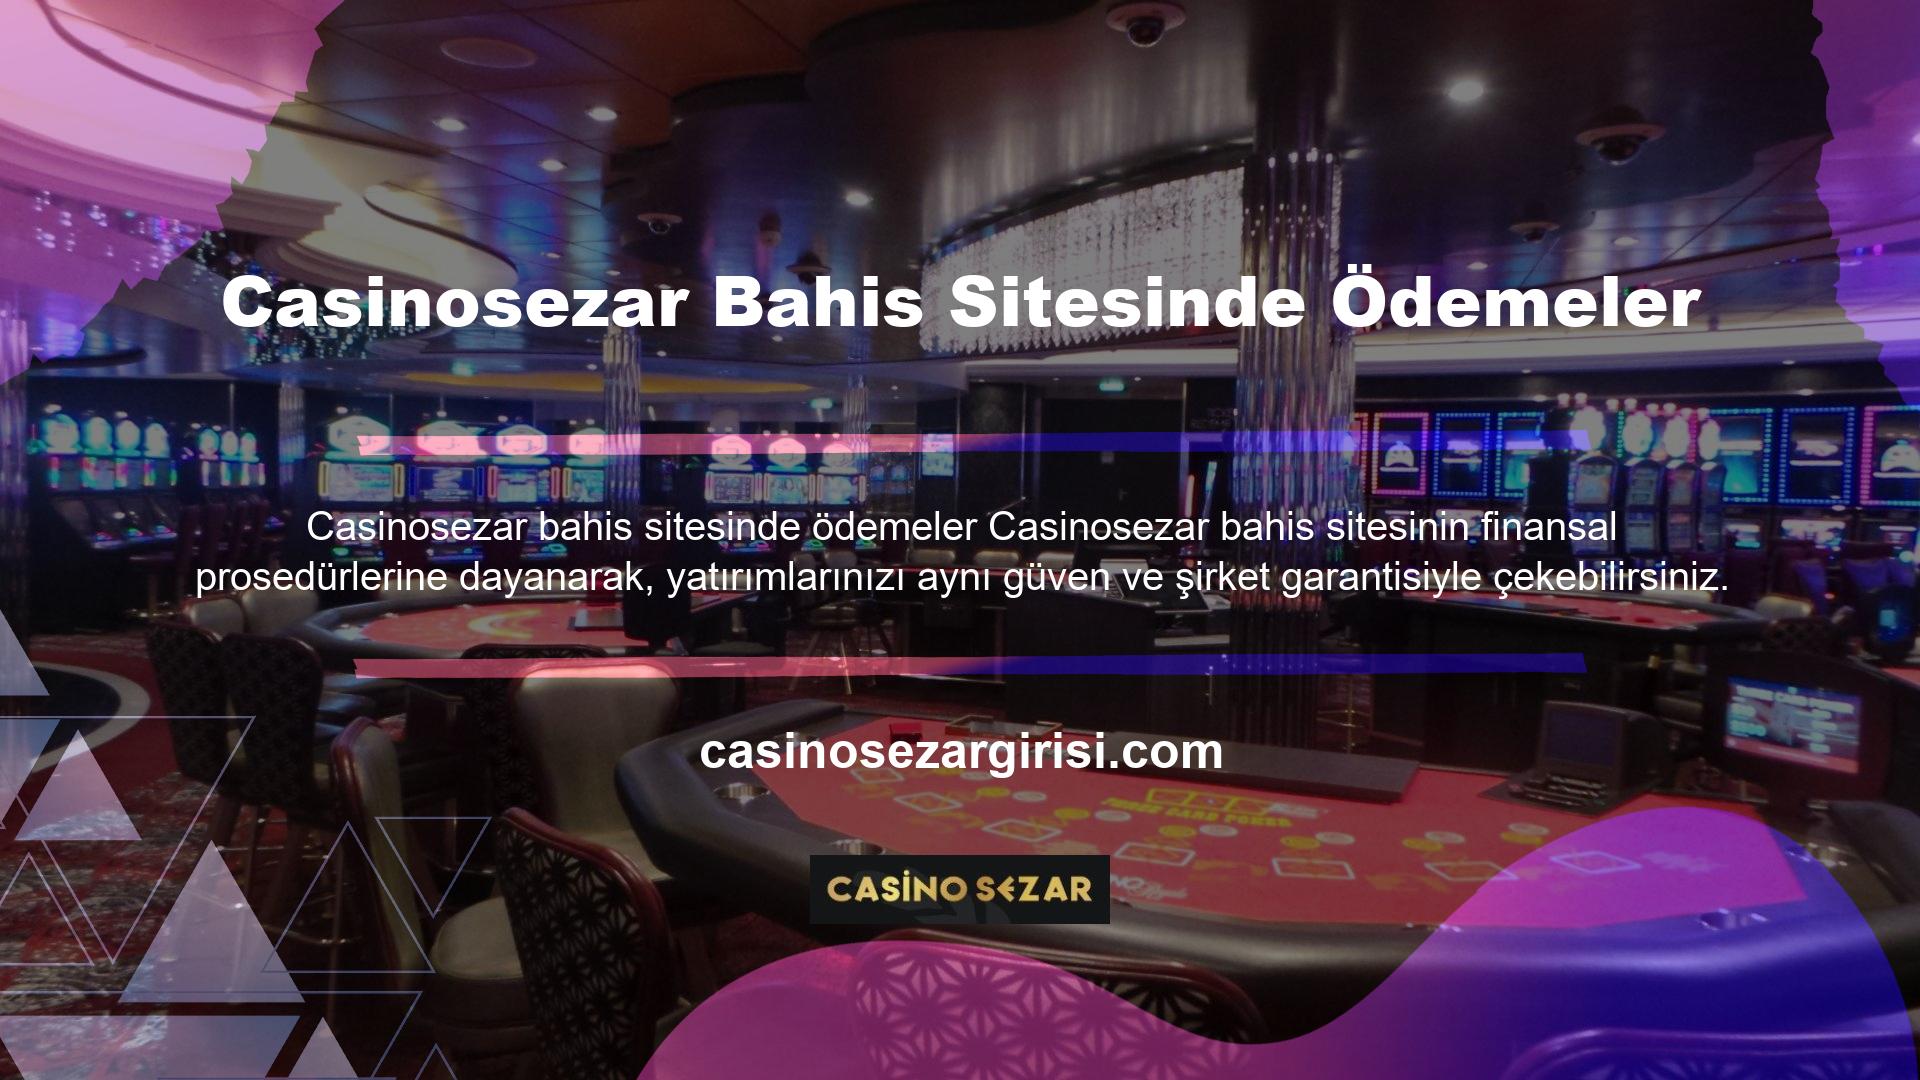 Casinosezar, kullanıcıların hesaplarından ödeme talep etmesi ve para çekme taleplerinin anında onaylanması konusunda şu ana kadar herhangi bir sorun yaşamadı